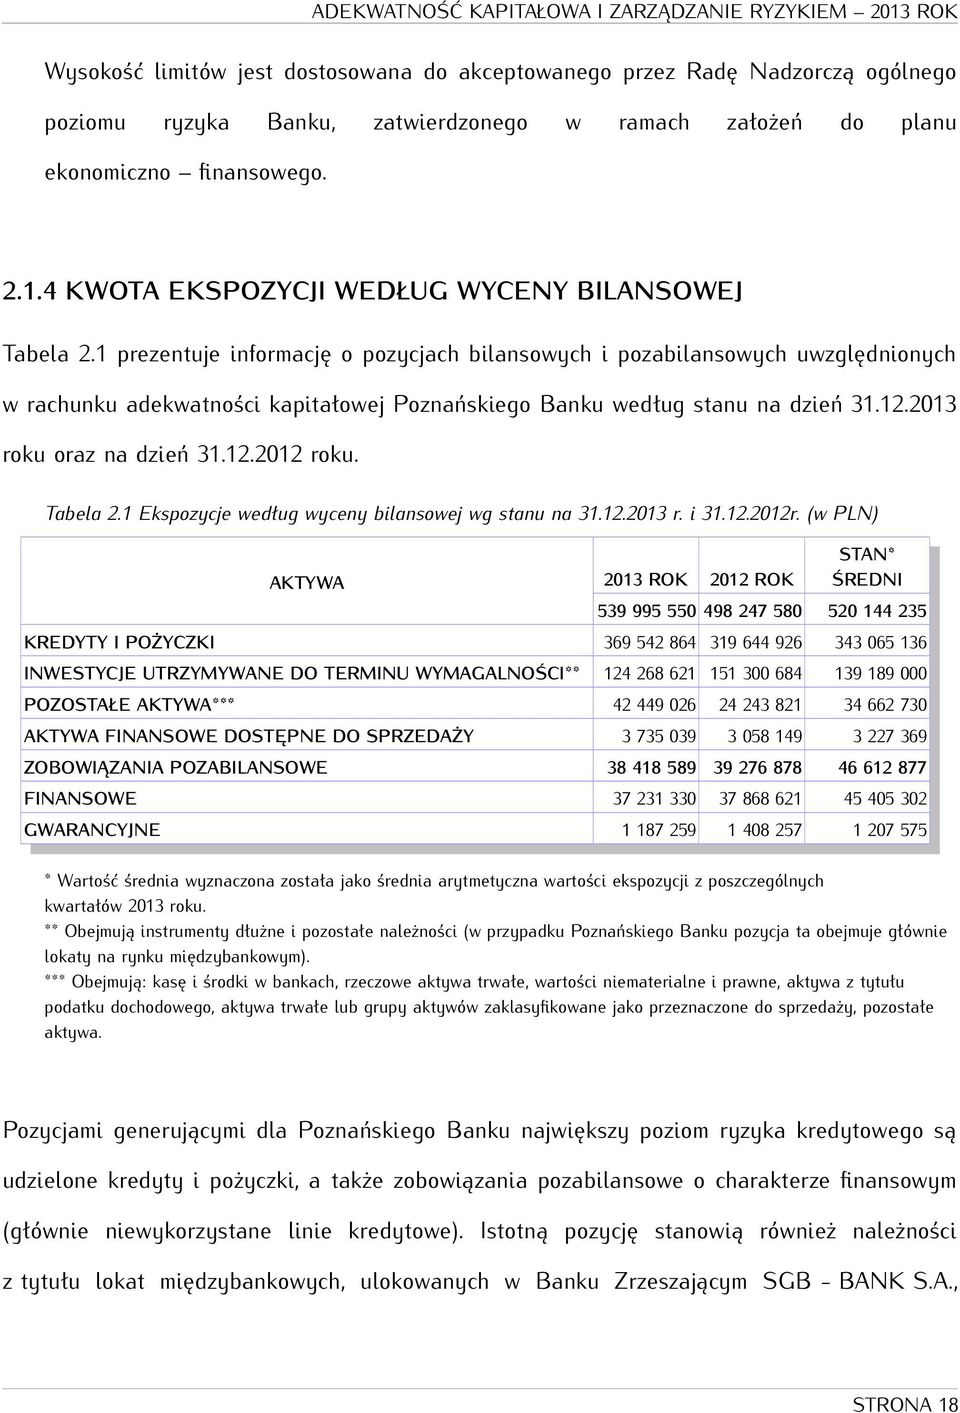 1 prezentuje informację o pozycjach bilansowych i pozabilansowych uwzględnionych w rachunku adekwatności kapitałowej Poznańskiego Banku według stanu na dzień 31.12.2013 roku oraz na dzień 31.12.2012 roku.